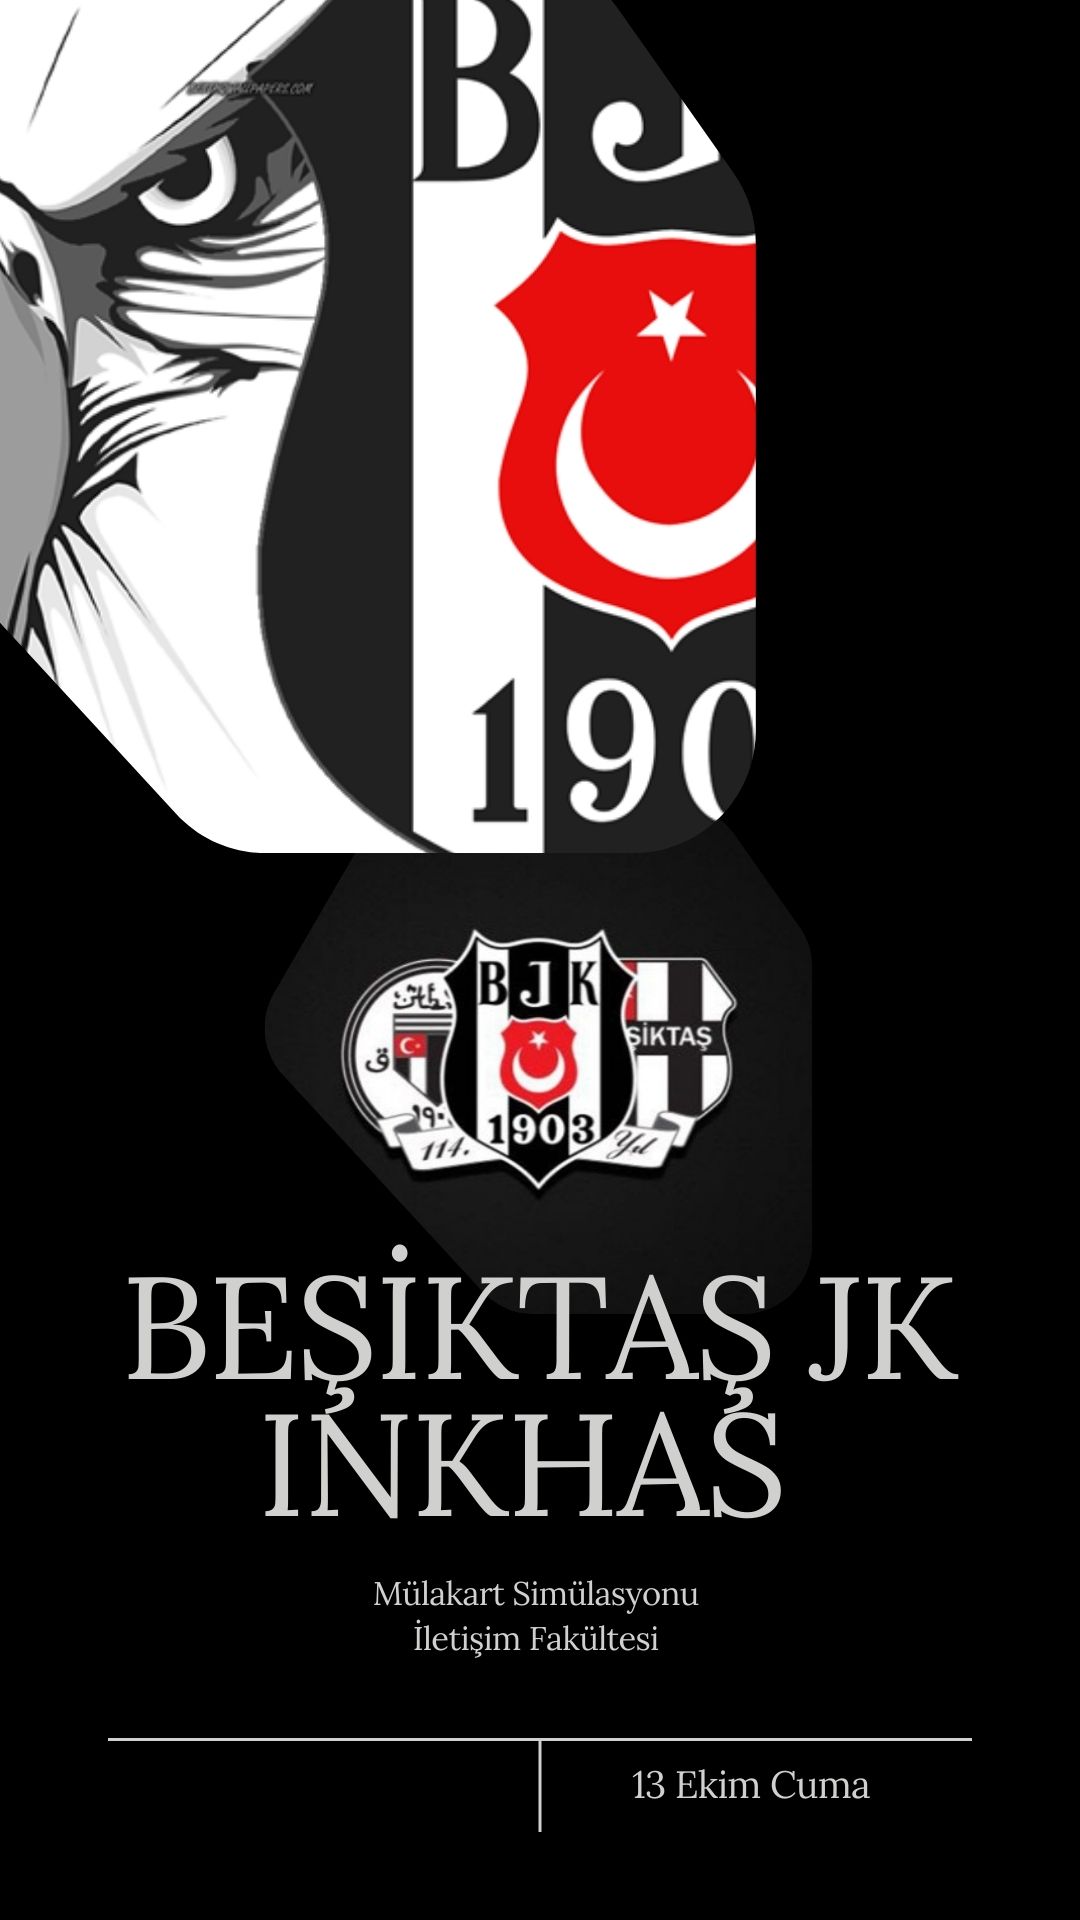 InKHAS - Beşiktaş JK